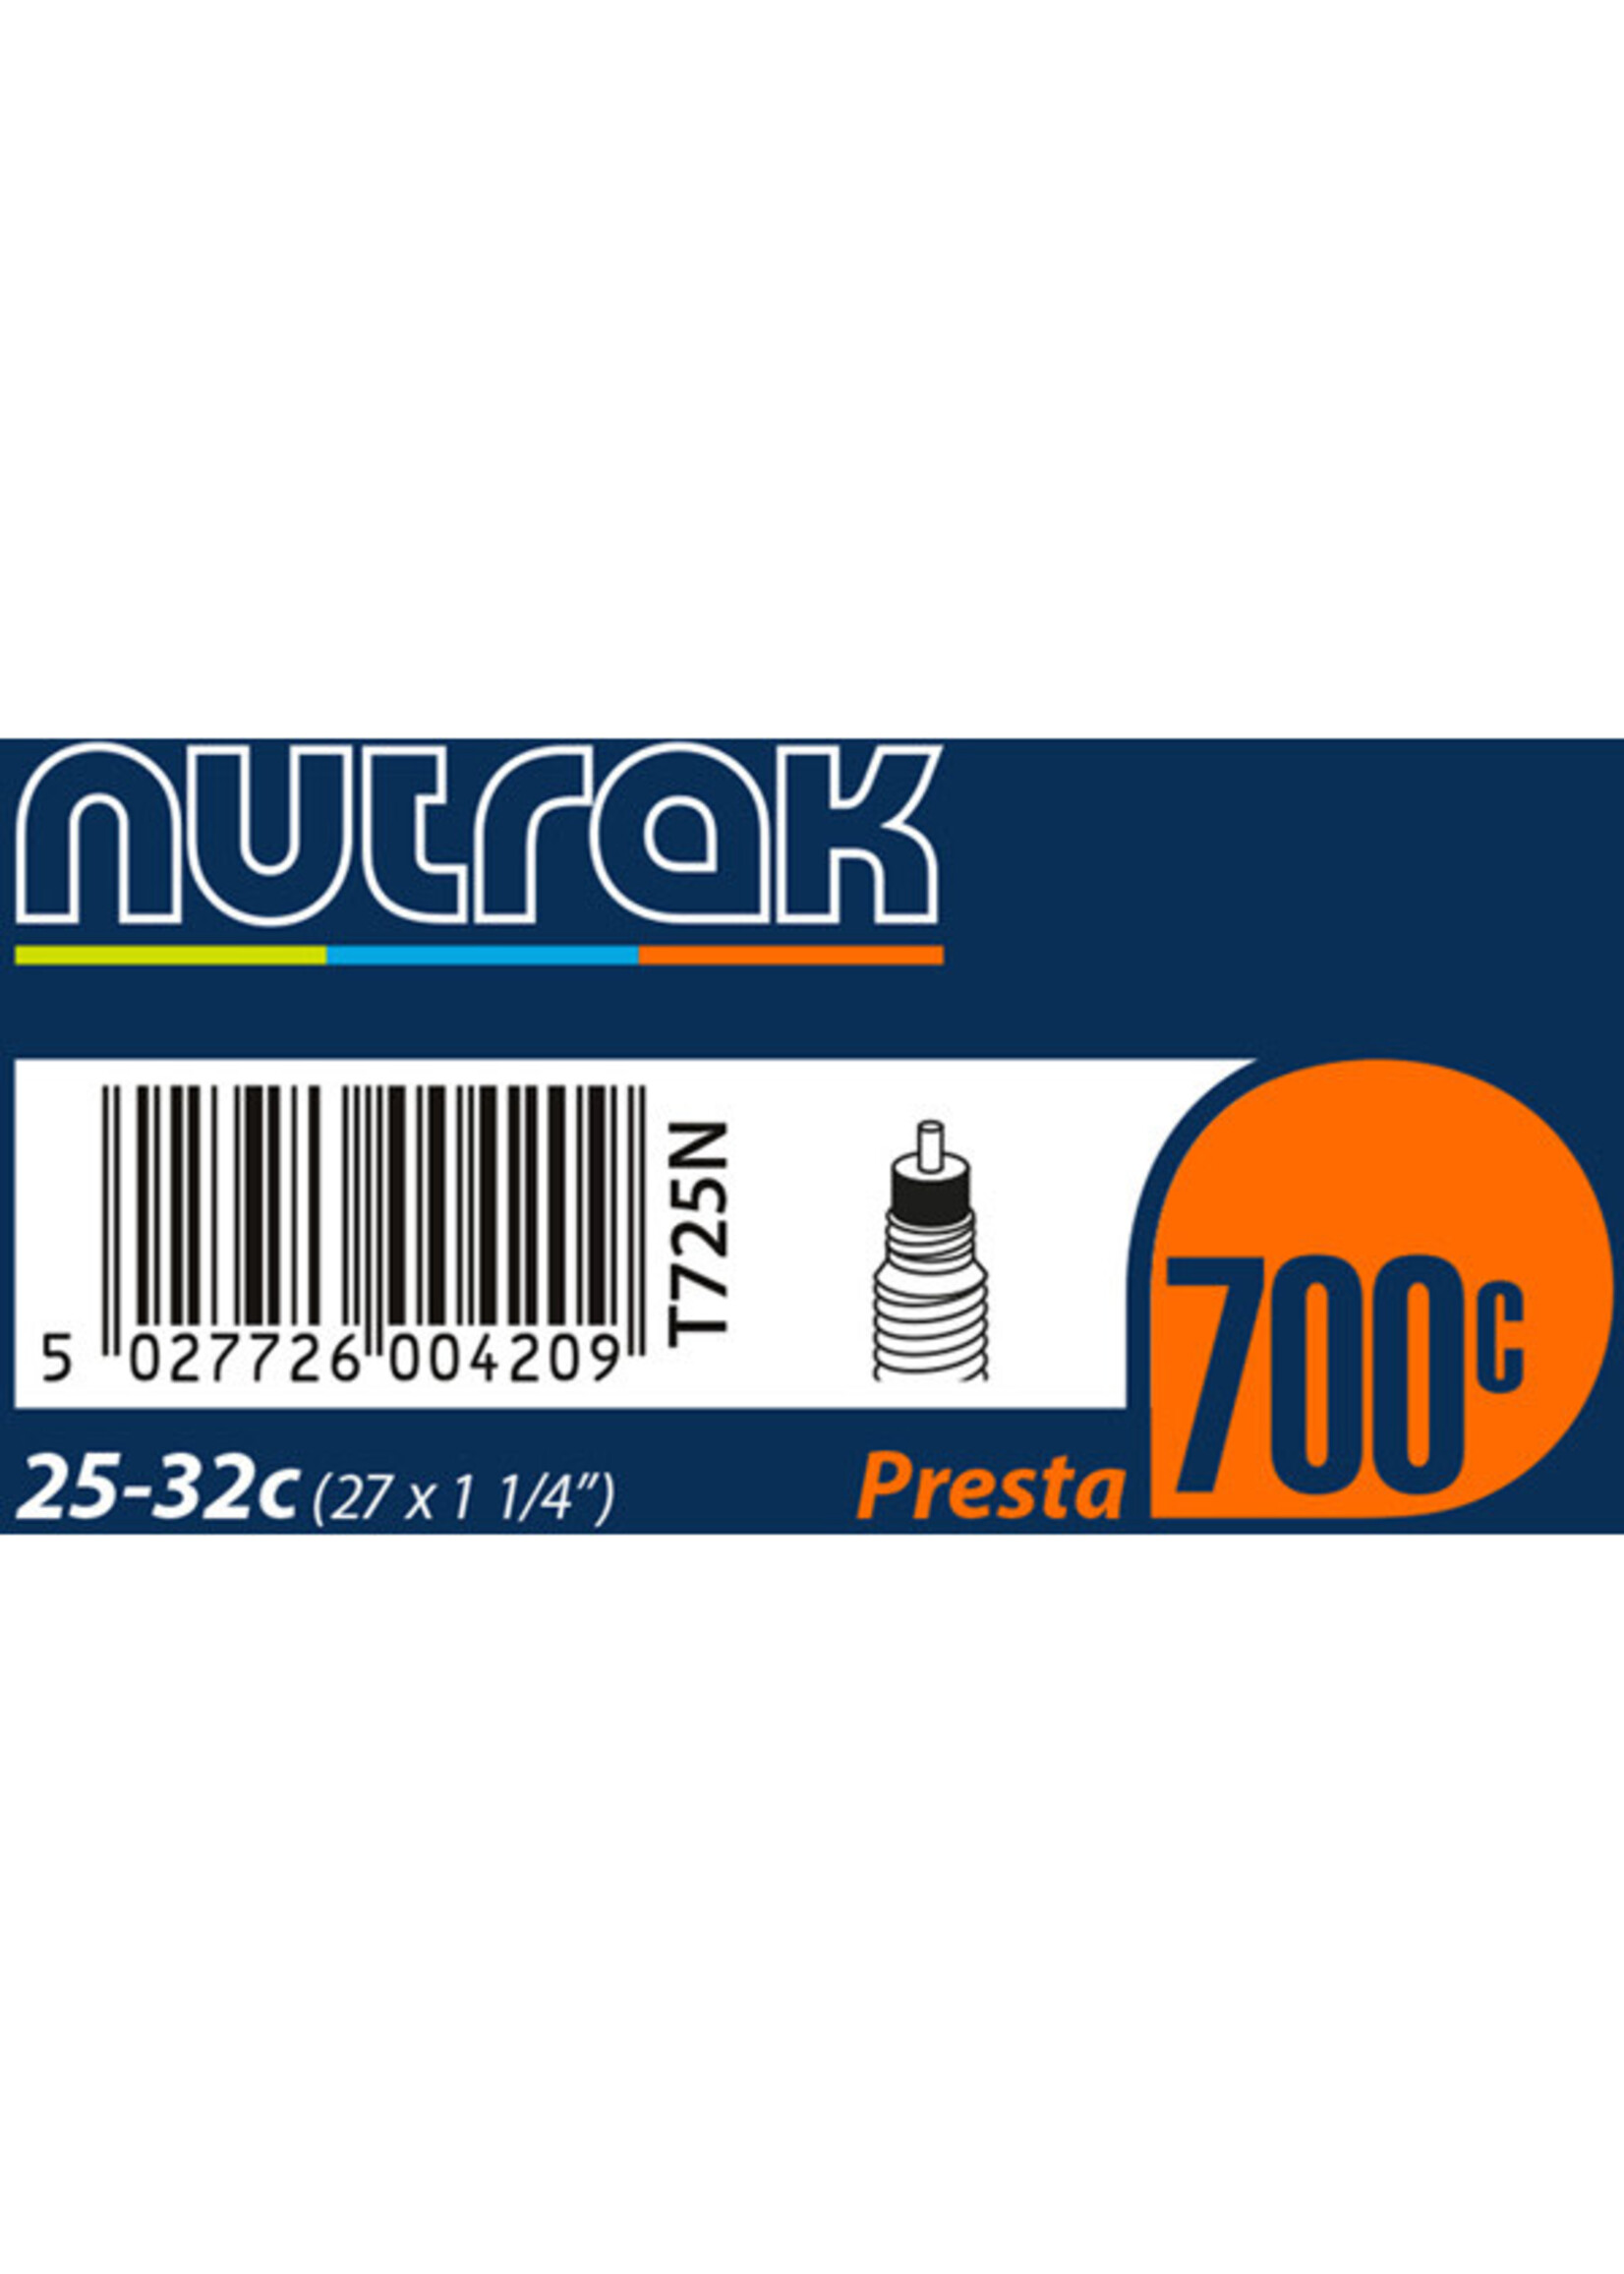 nutrak Nutrak Inner Tube 700 x 25 - 32C (27 x 1-1/4 inch) Presta inner tube